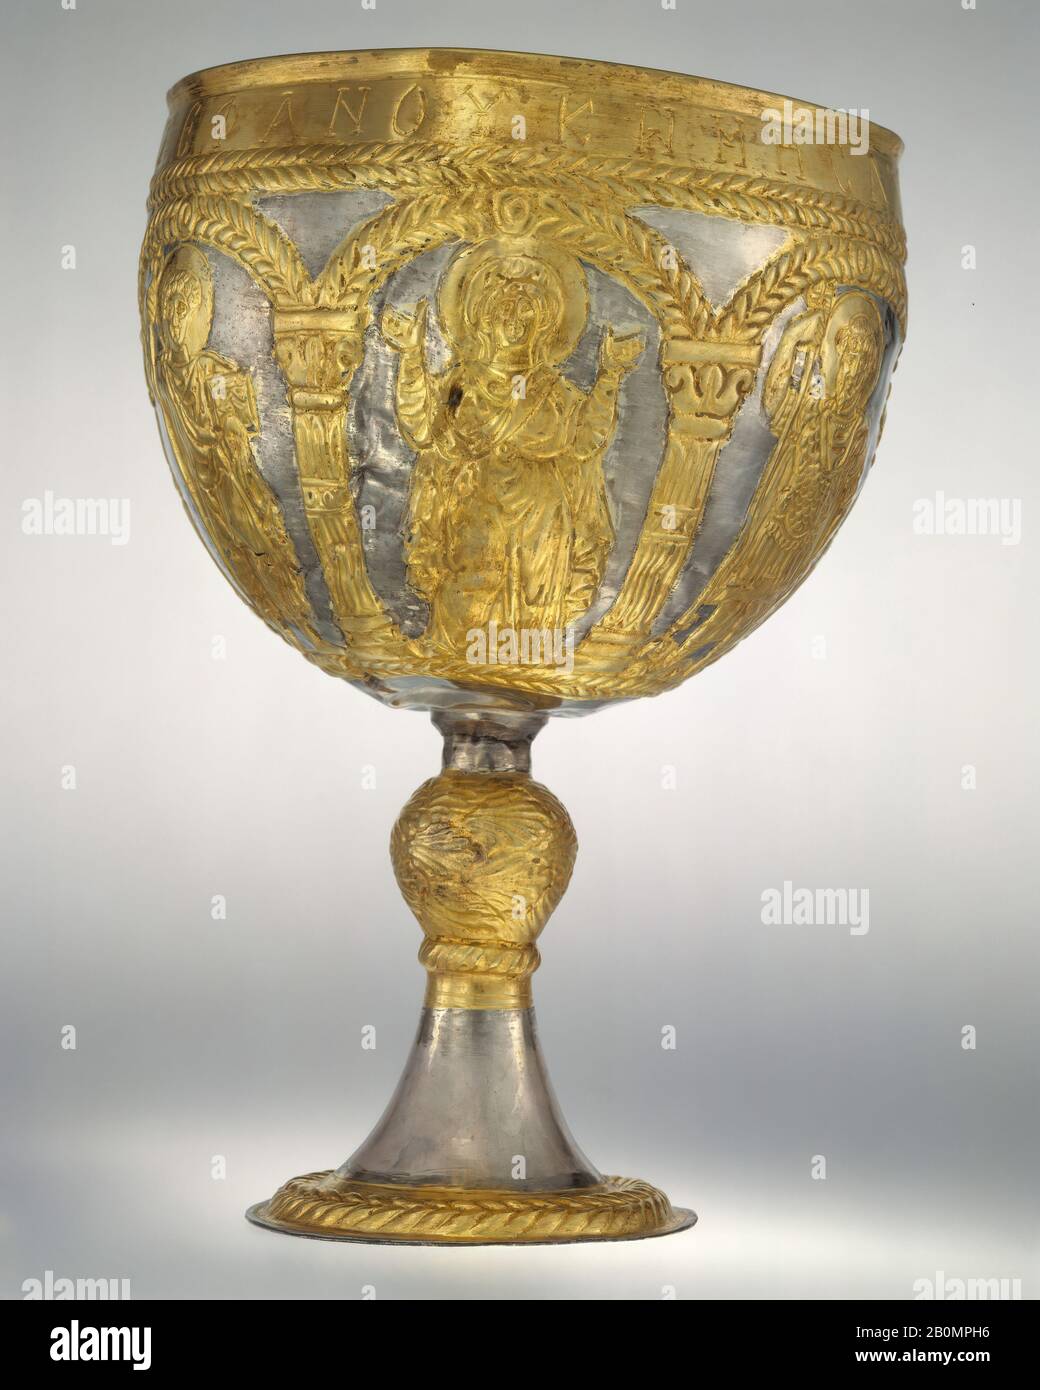 El Tesoro Attarouthi - Cáliz, Bizantino, 500–650, Hecho en Attarouthi, Siria, Bizantino, Plata y plata dorada, En Total: 9 11/16 × 6 9/16 pulg., 16,7oz. (24.6 × 16.7 cm, 474 g), diámetro del pie: 15/16 pulg. (10 cm), diámetro del aro: 1 5/8 pulg. (4.1 cm), Capacidad de copa: 2000 ml, Metalurgia-Plata Foto de stock